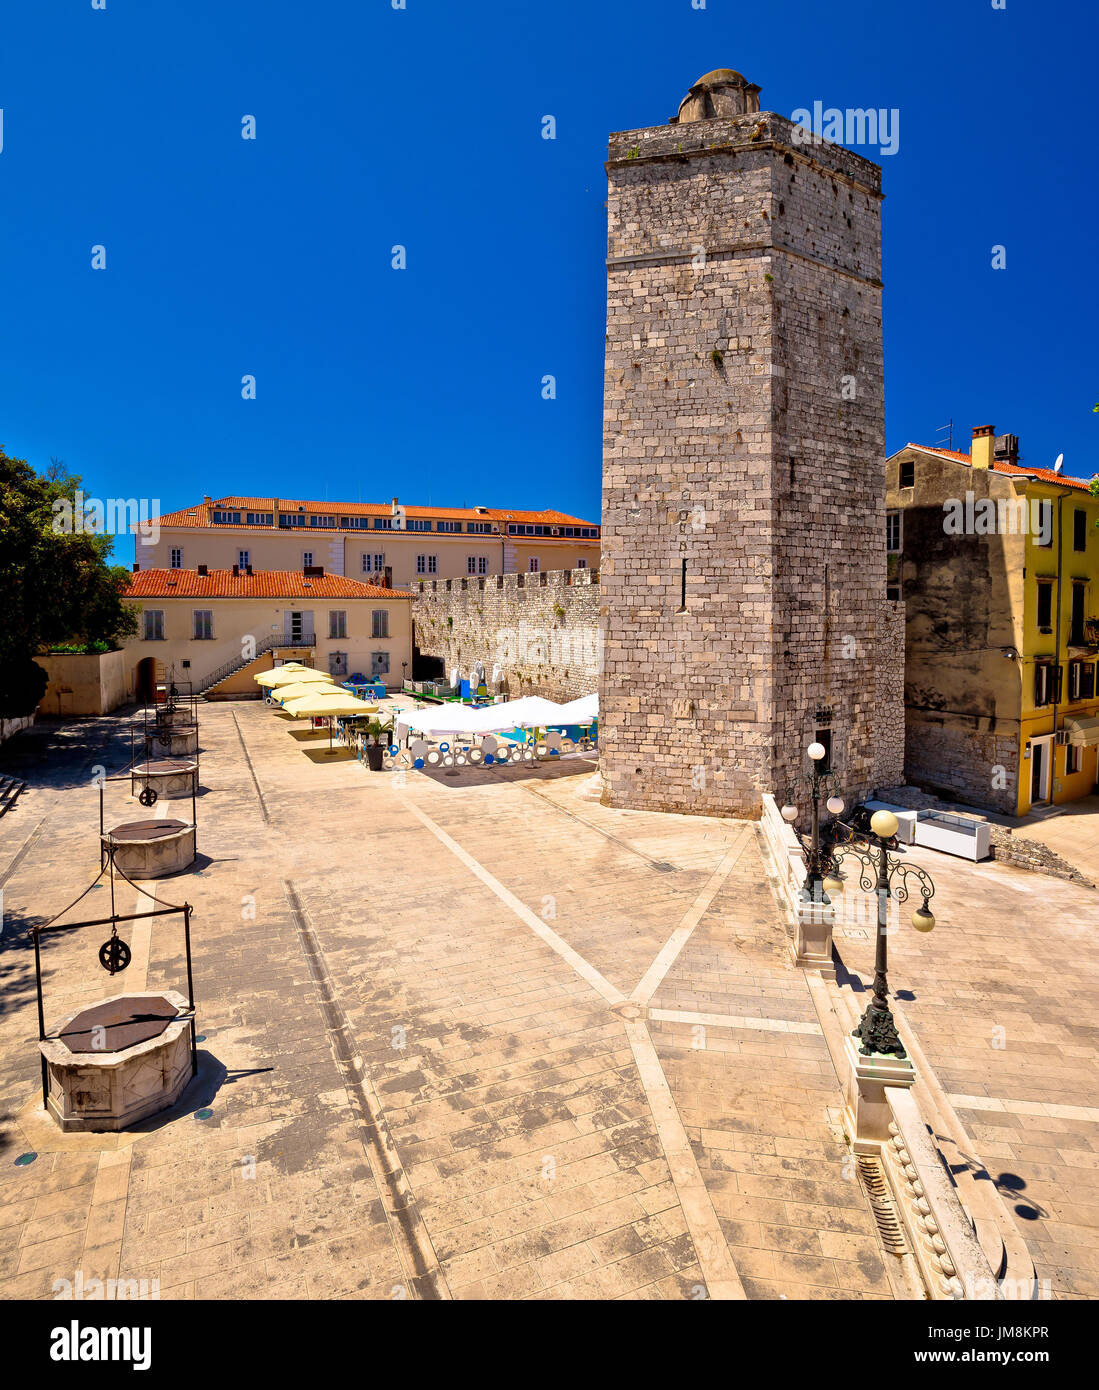 Zadar Five wells square and historic architecture view, Dalmatia, Croatia Stock Photo